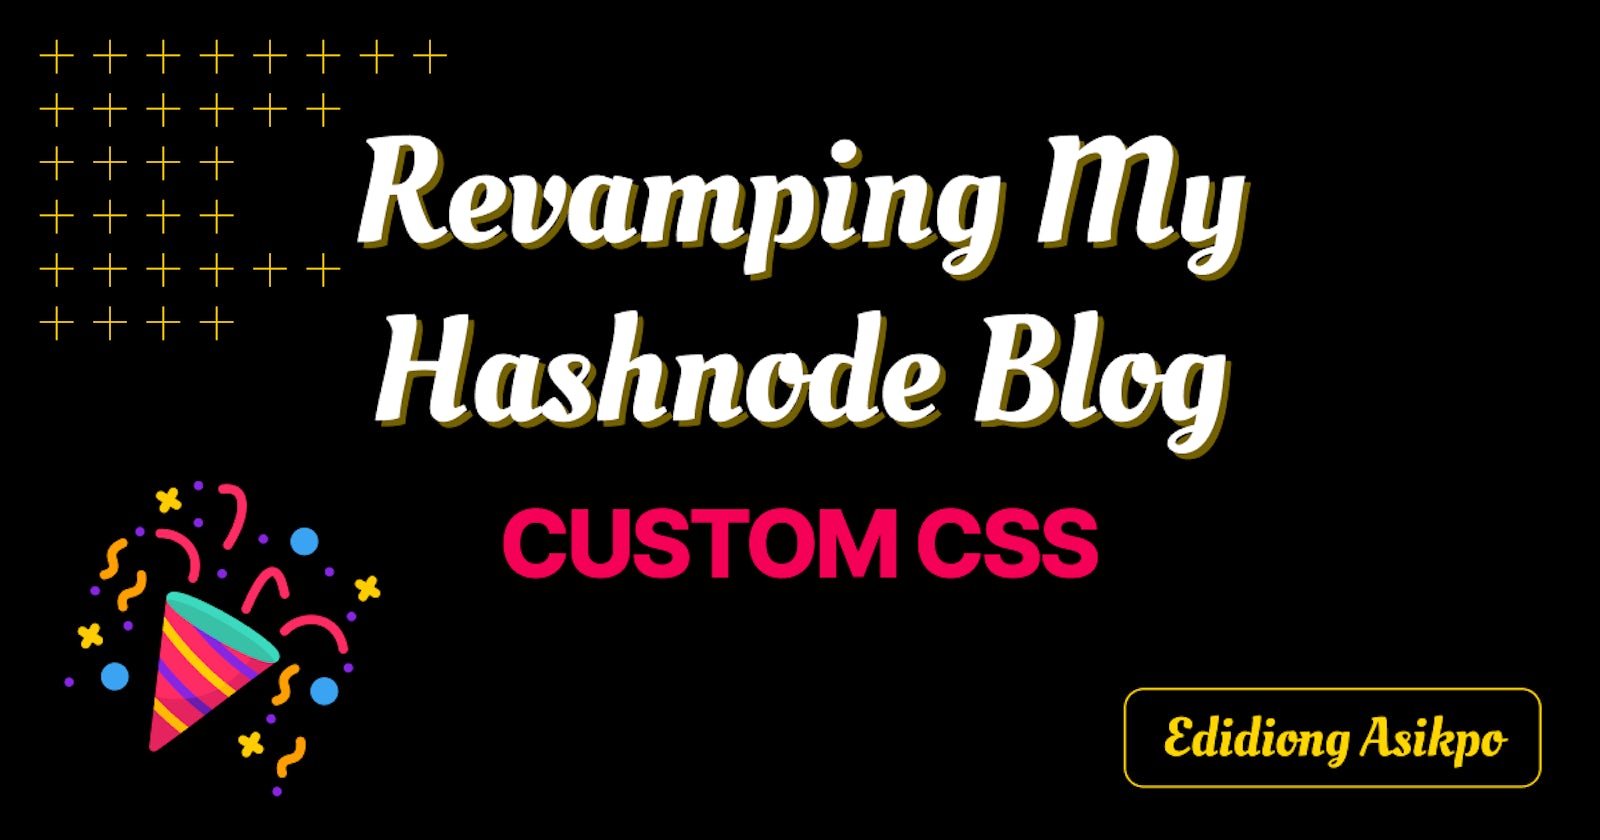 Revamping my Hashnode blog using the amazing Custom CSS feature!